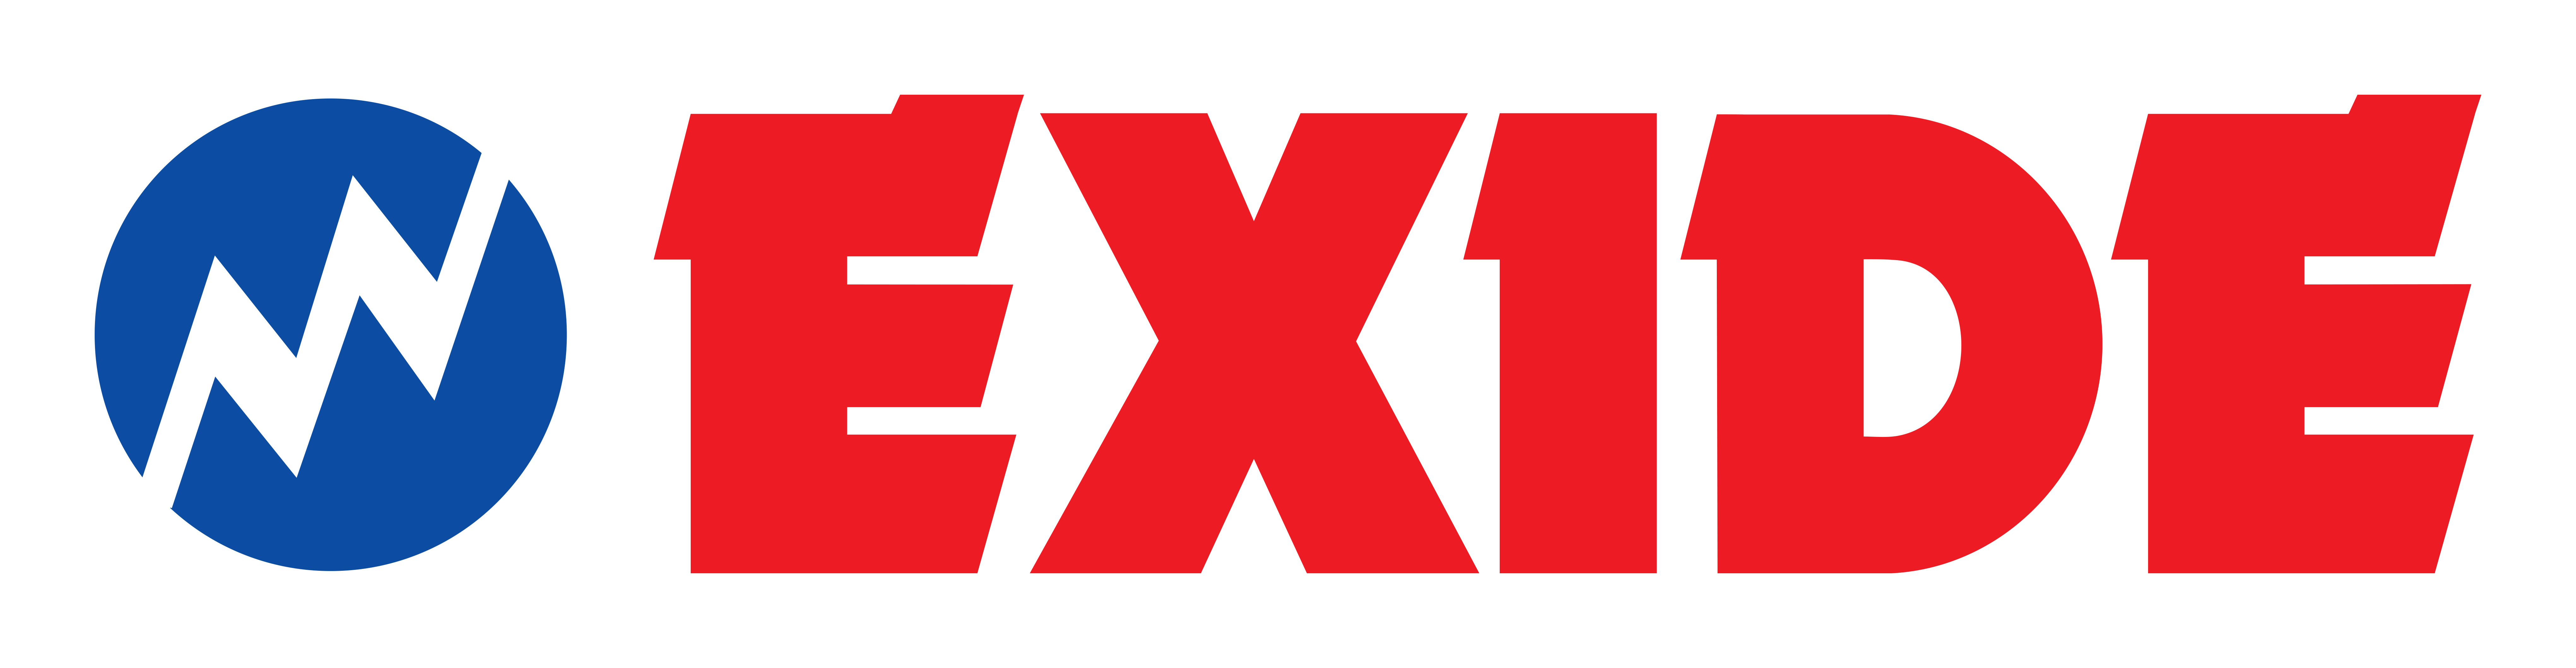 EXIDE BATTERIES Logo PNG Transparent & SVG Vector - Freebie Supply